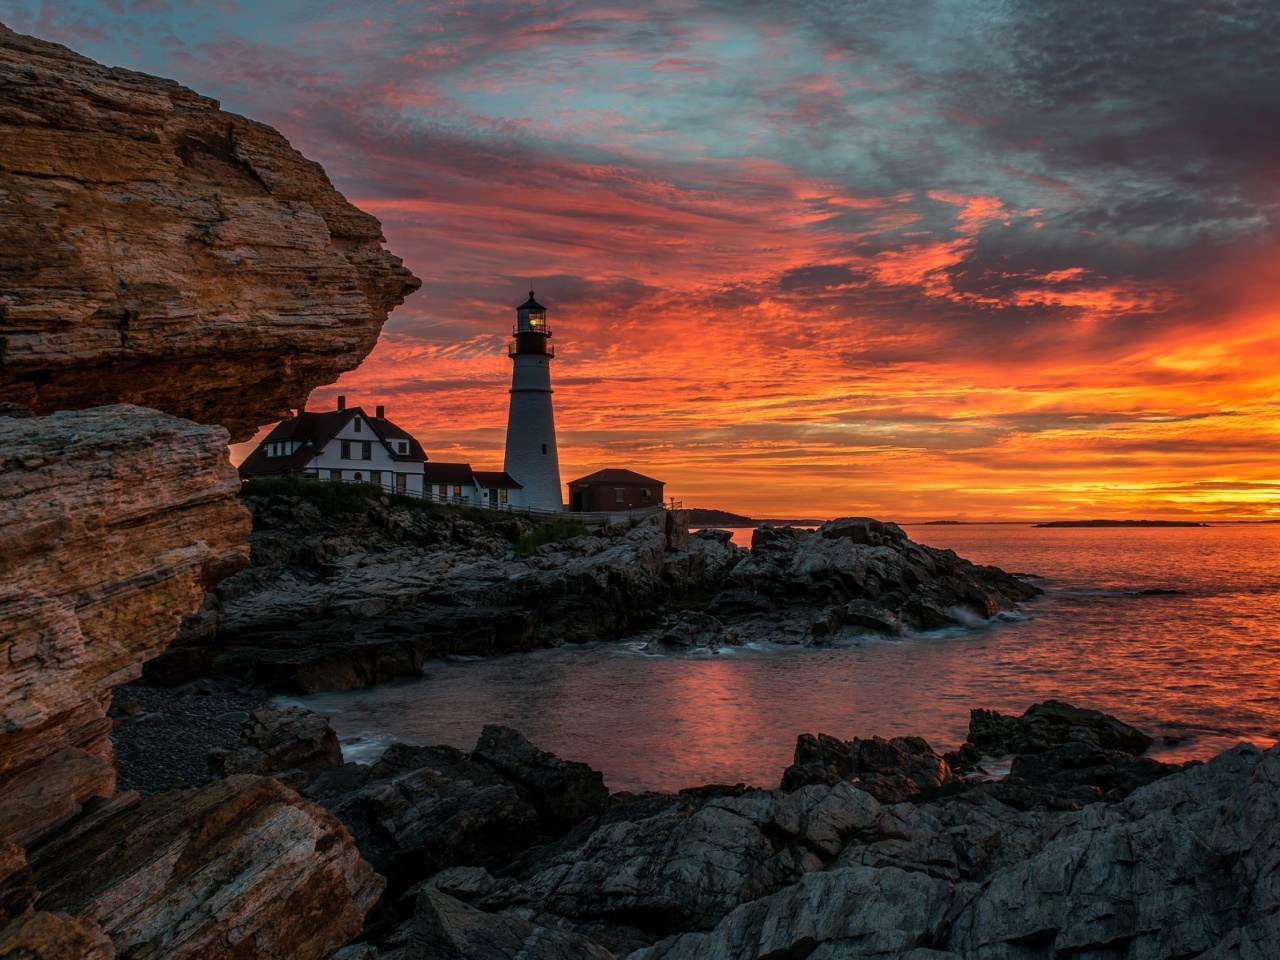 Обои Sunset and lighthouse 1280x960